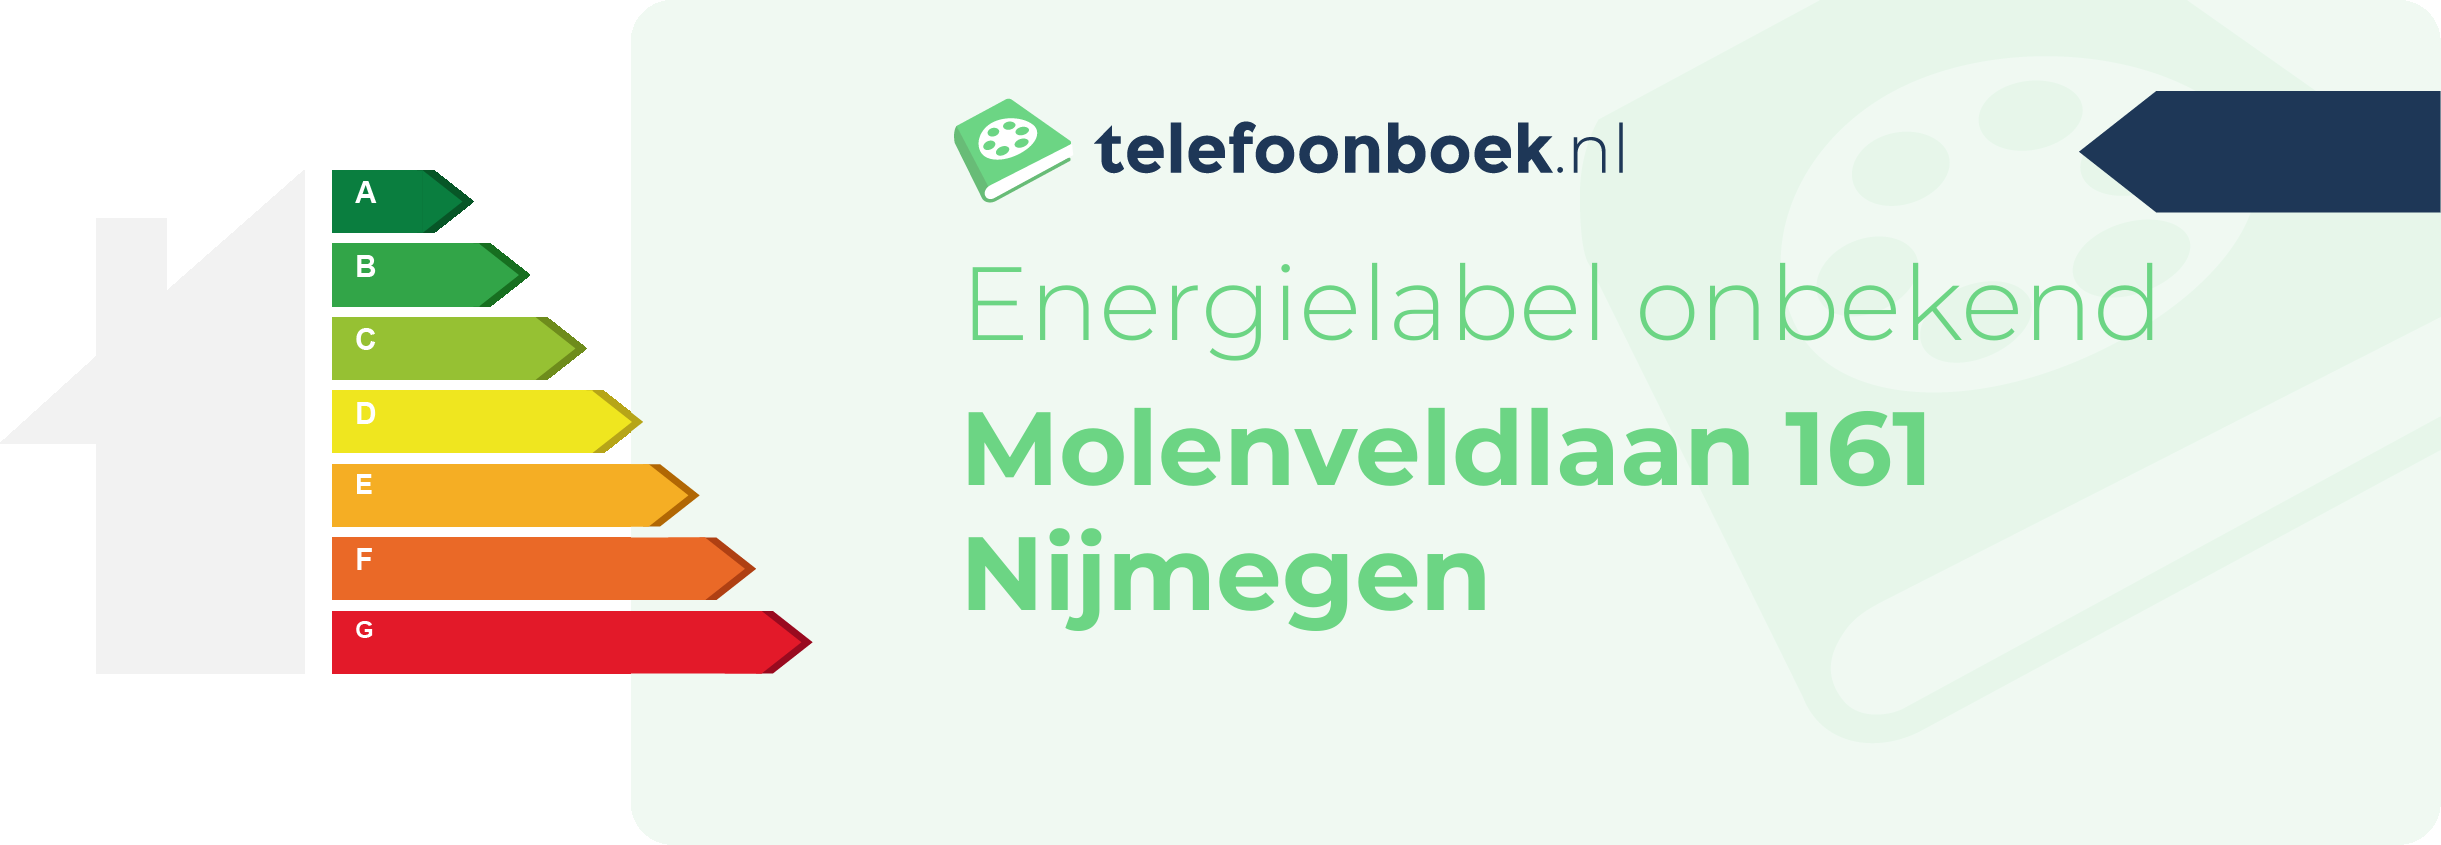 Energielabel Molenveldlaan 161 Nijmegen